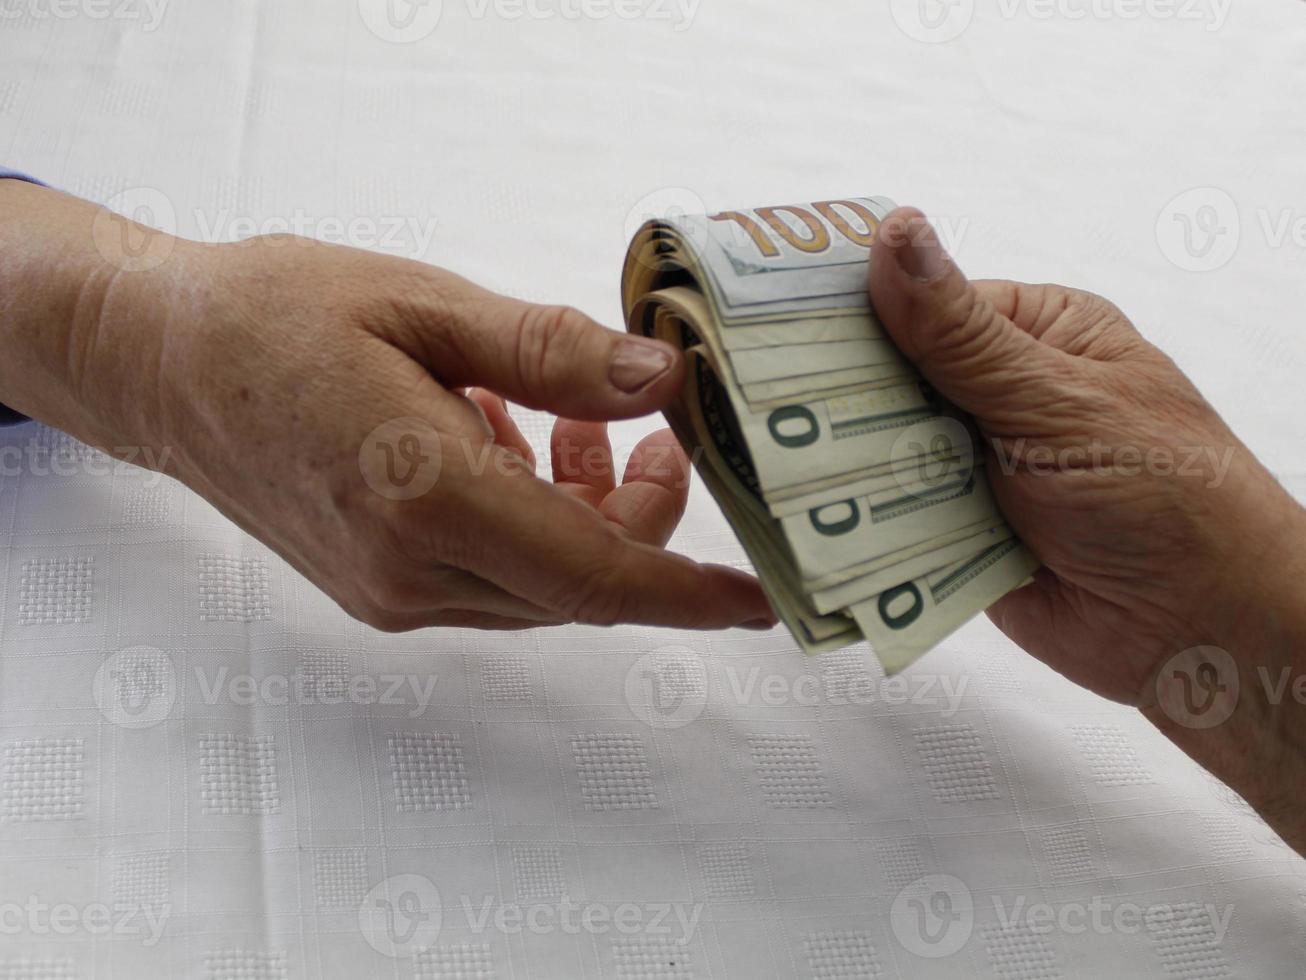 fotografia per temi di economia e finanza con denaro in dollari americani foto